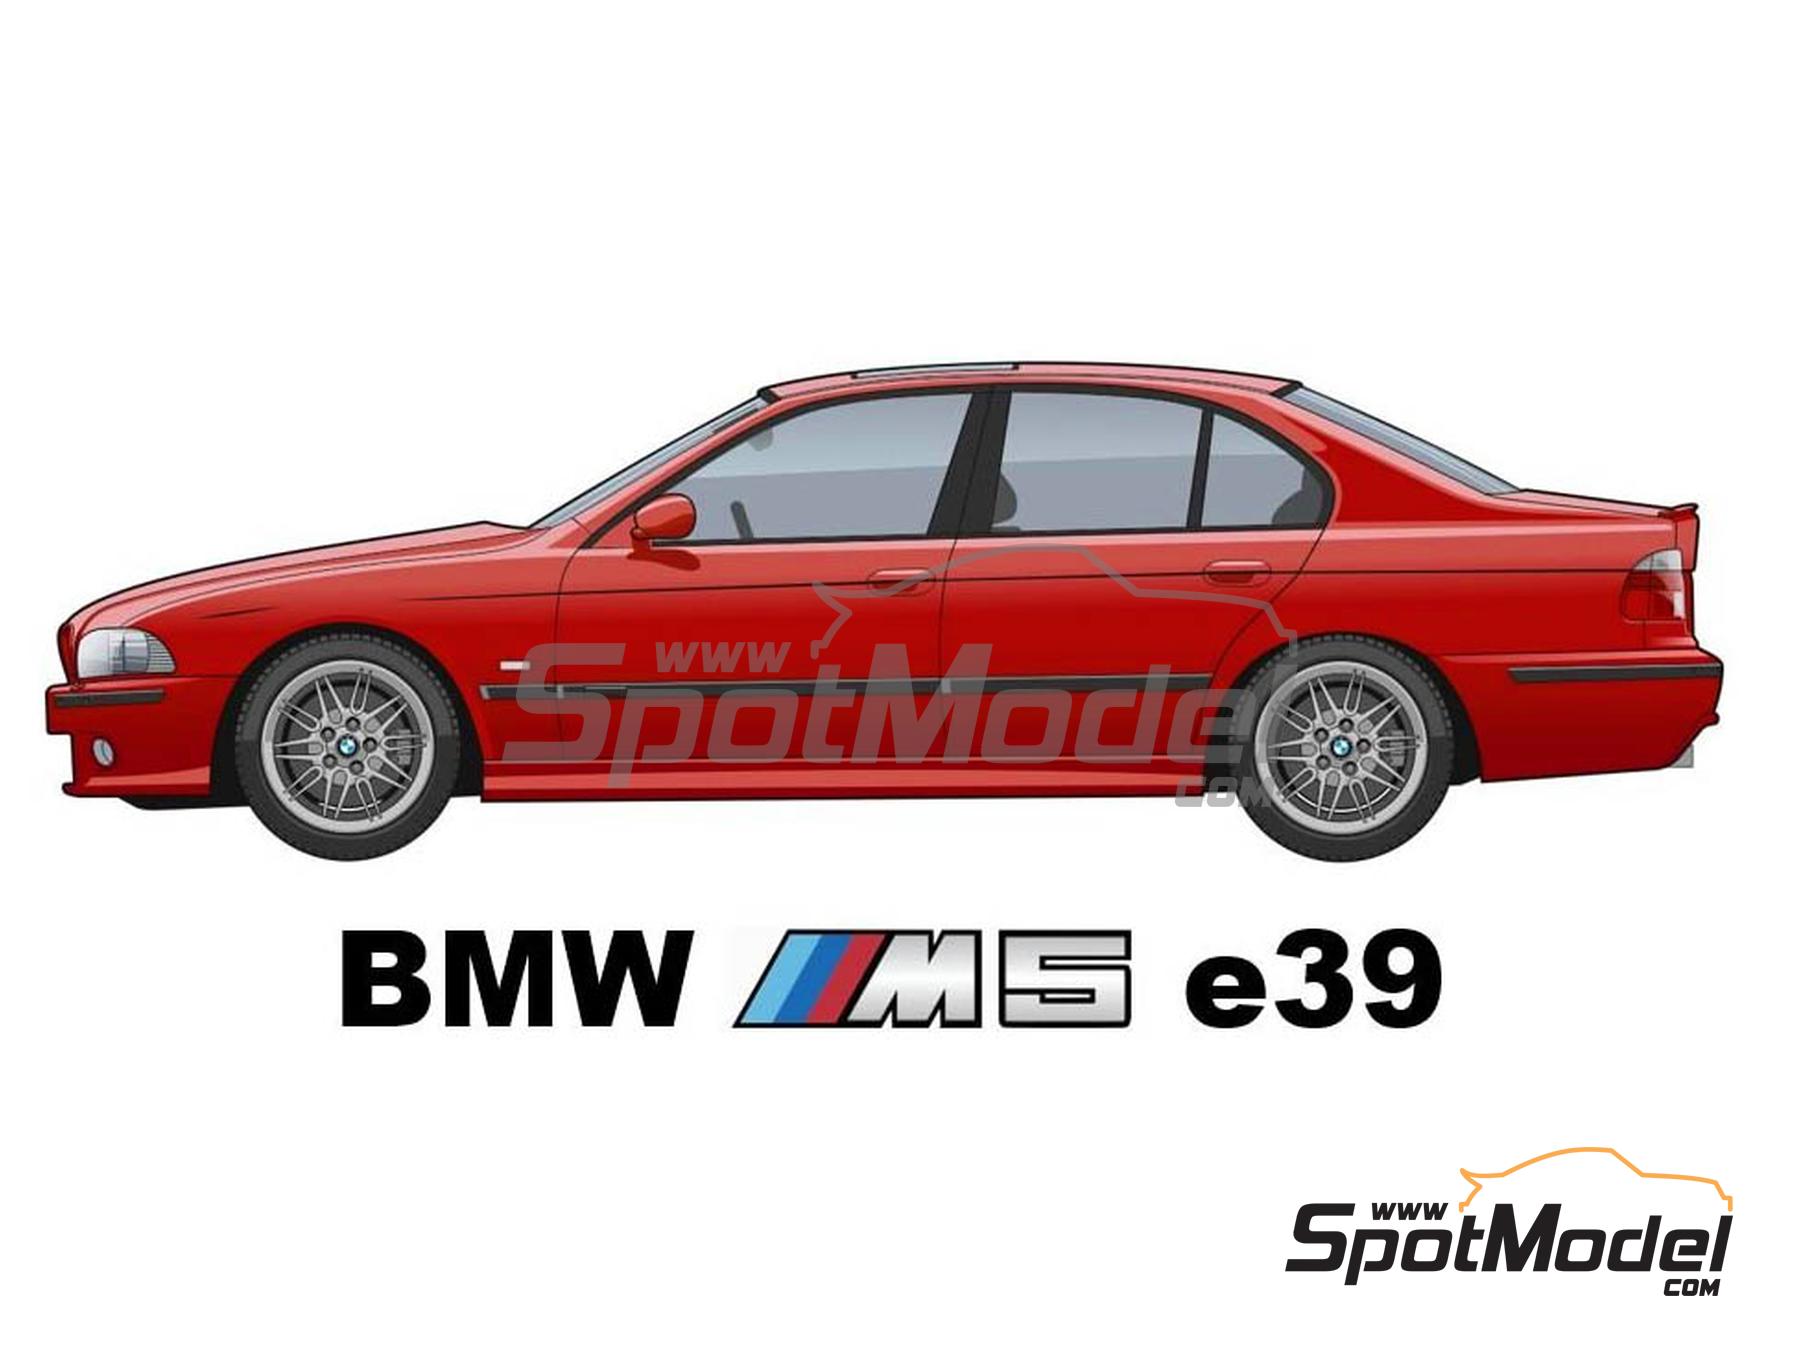 SpotModel | USCP 24K004: Car scale model kit 1/24 scale - BMW M5 e39 (ref.  USCP 24K004-24K004)